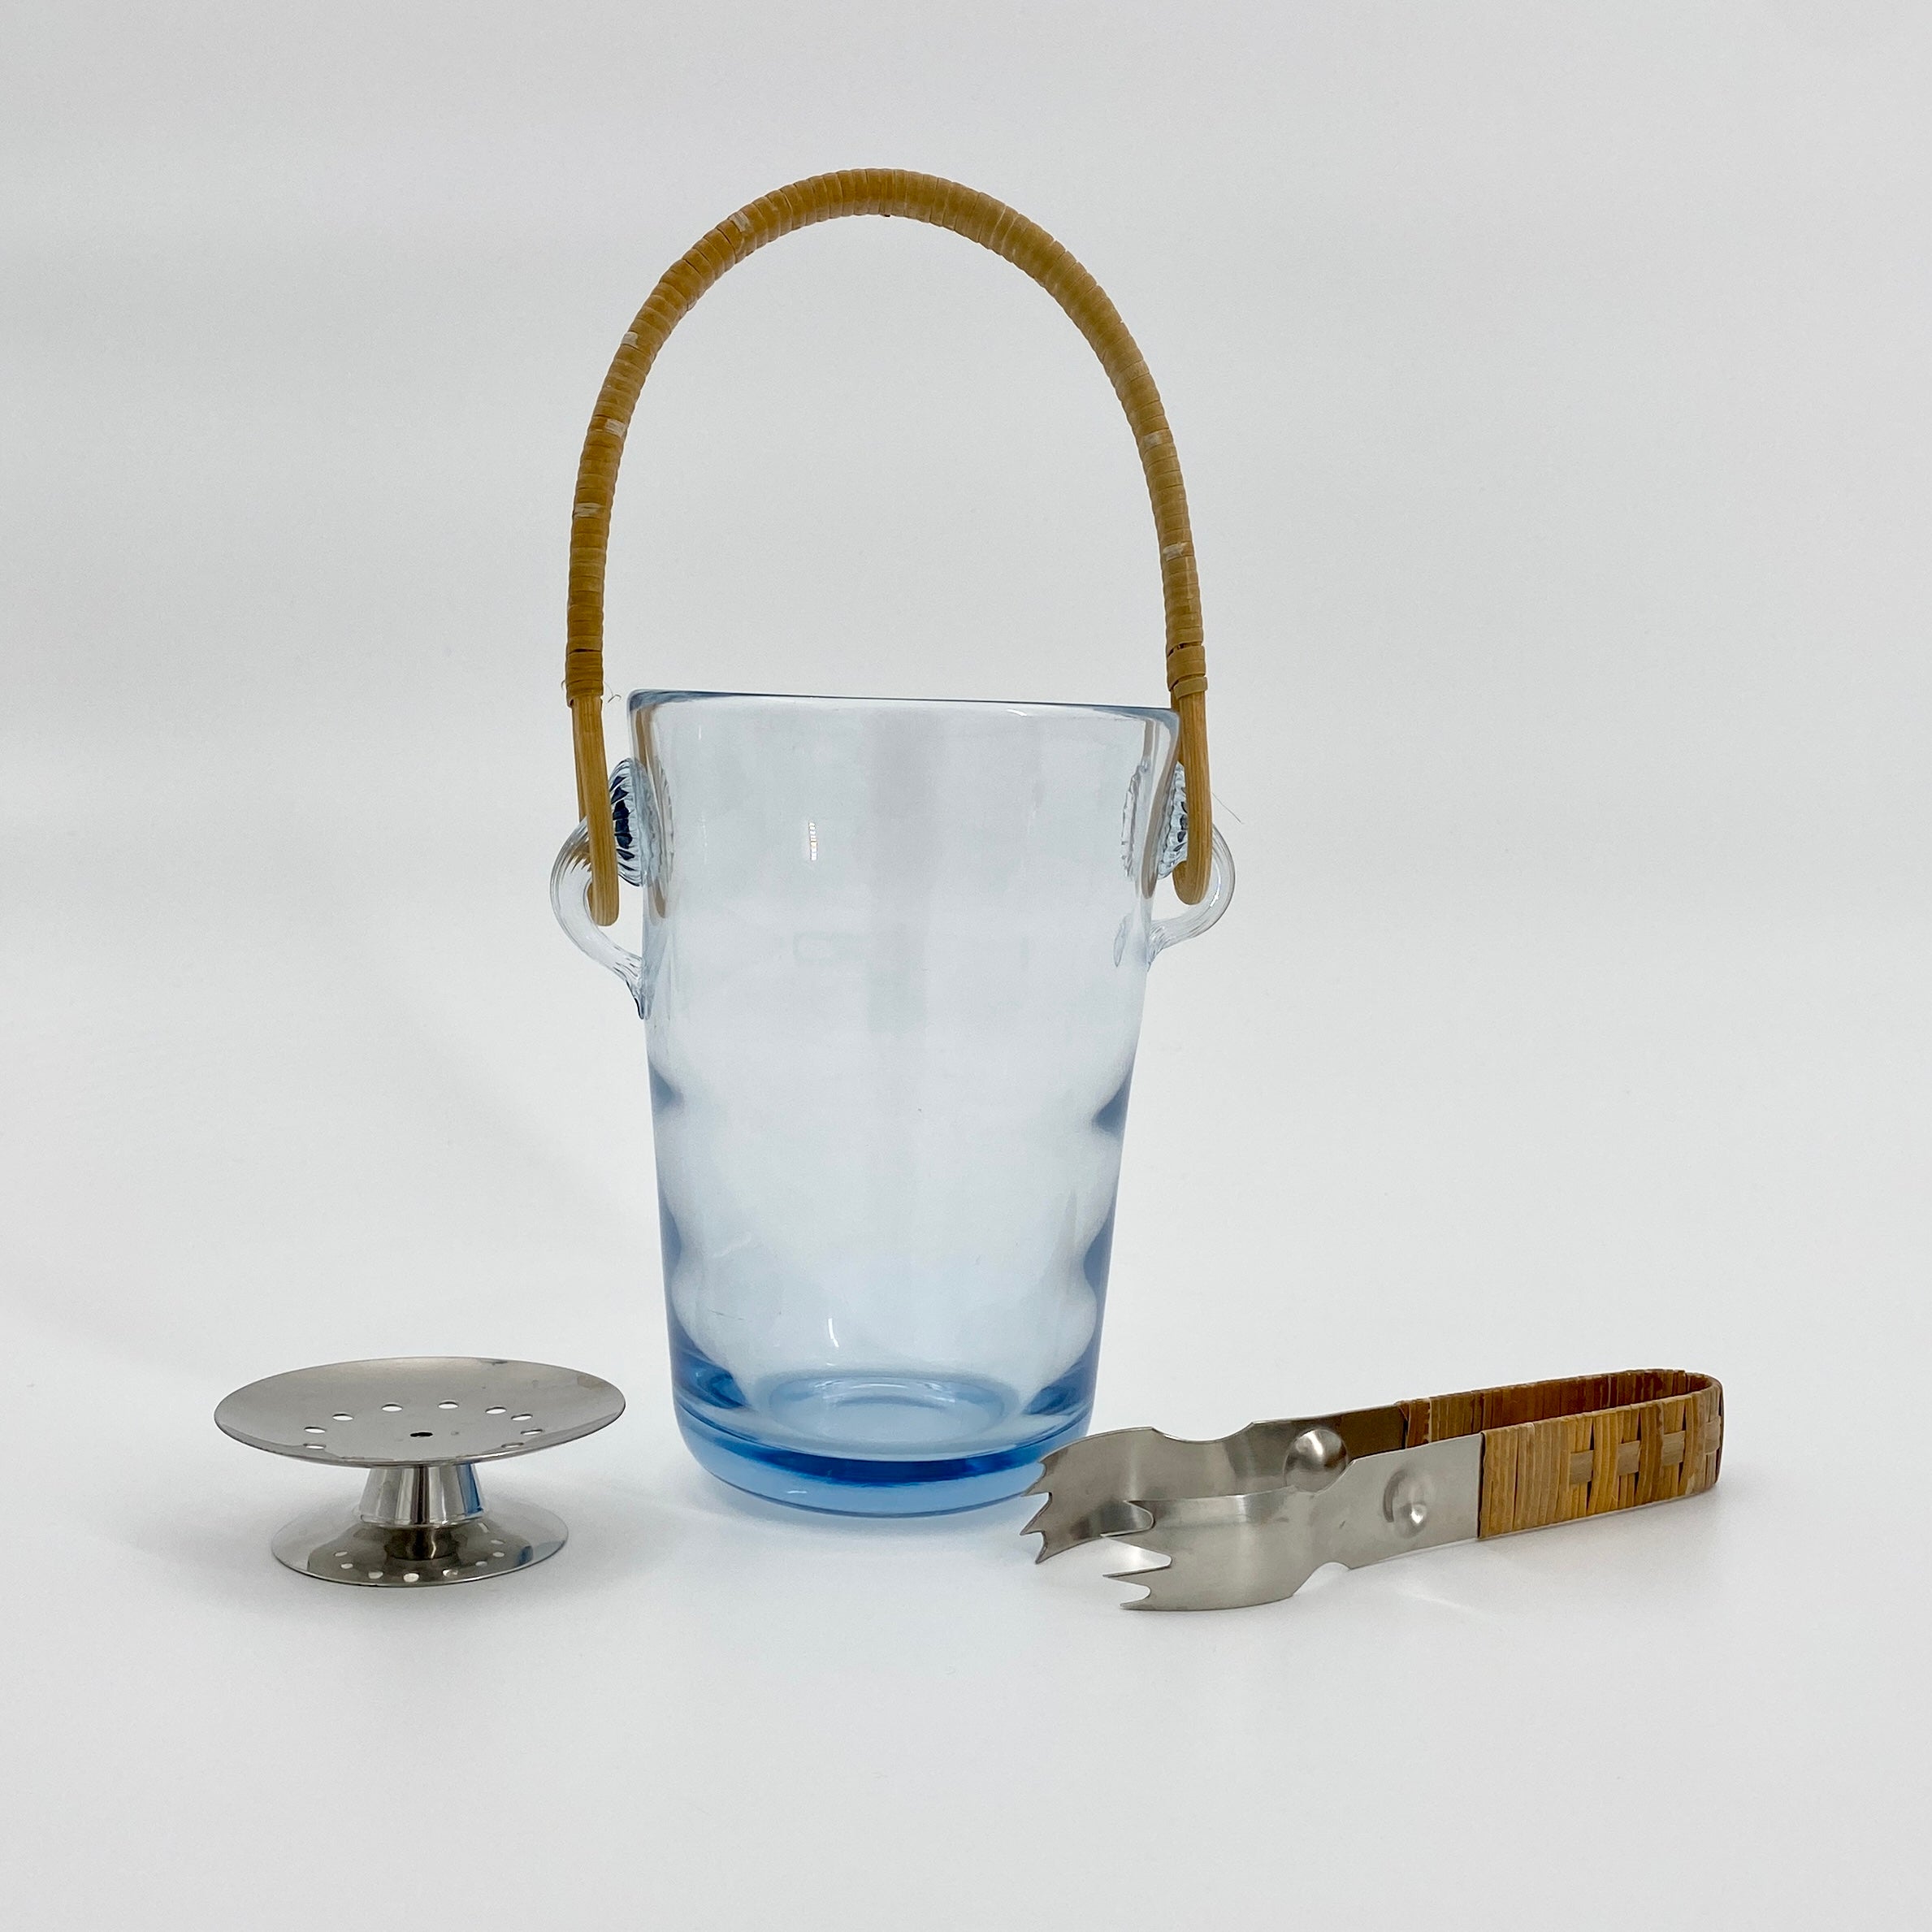 Eiskübel aus skandinavisch-modernem Glas von Jacob Bang für Holmegaard, um 1930. Dieser Glaseiskübel ist signiert 